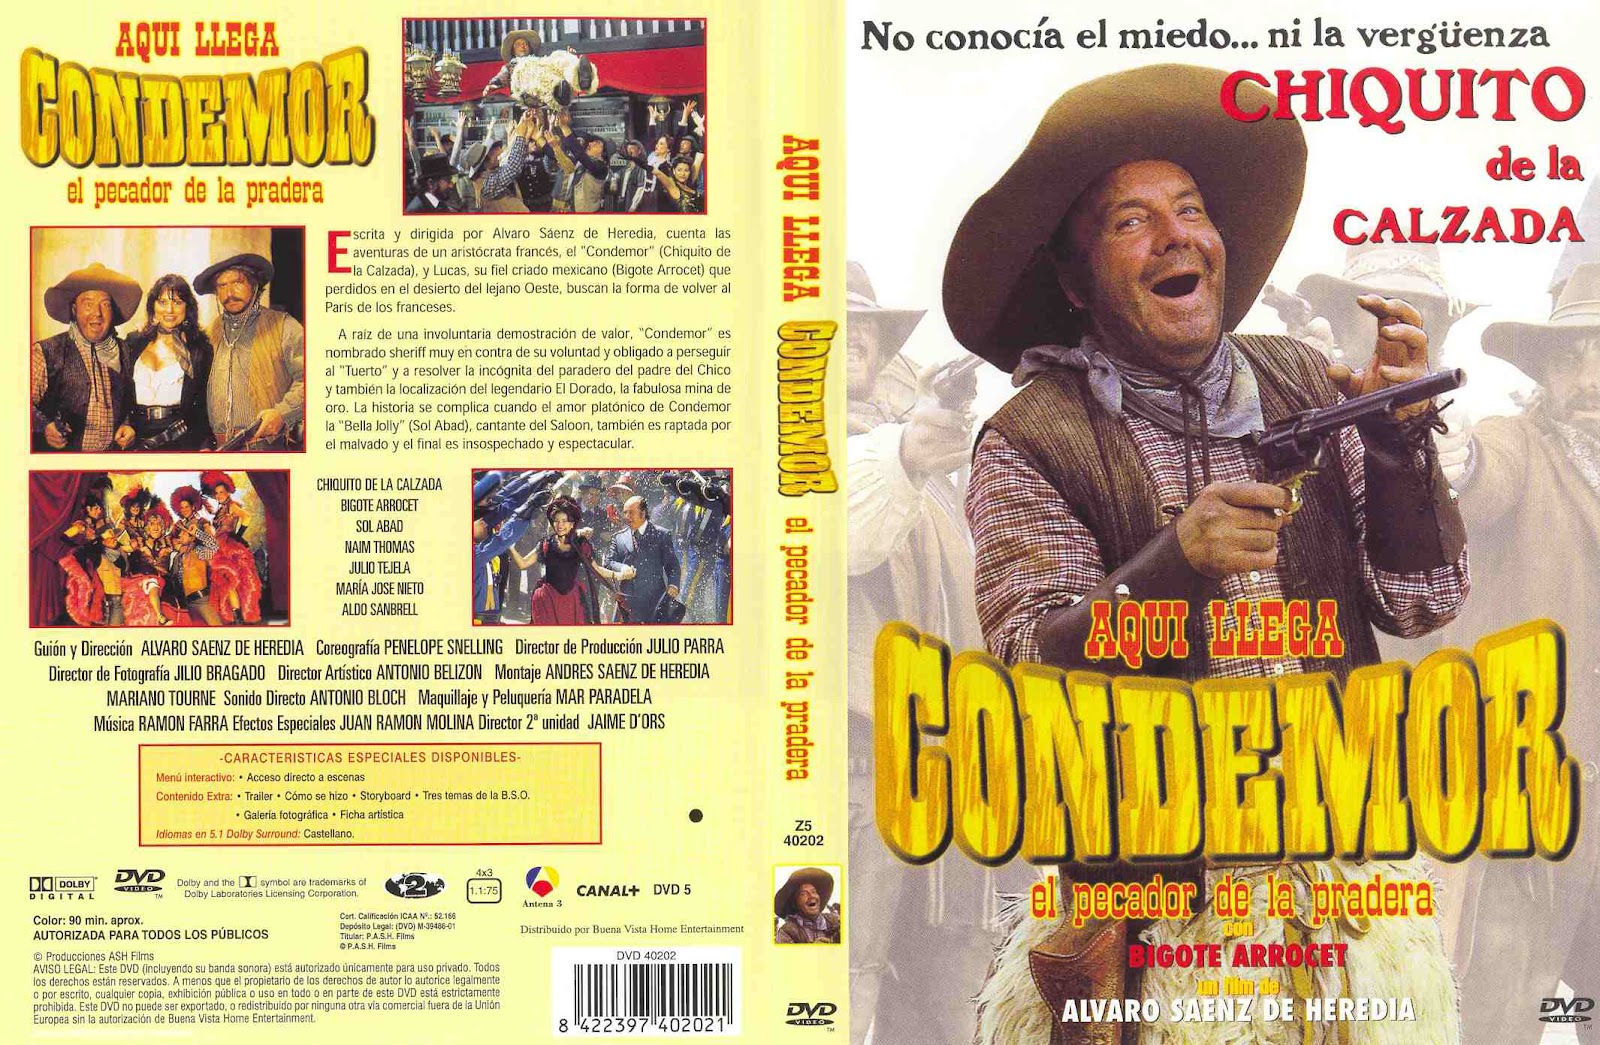 Aqui Llega Condemor, El Pecador De La Pradera [1996]